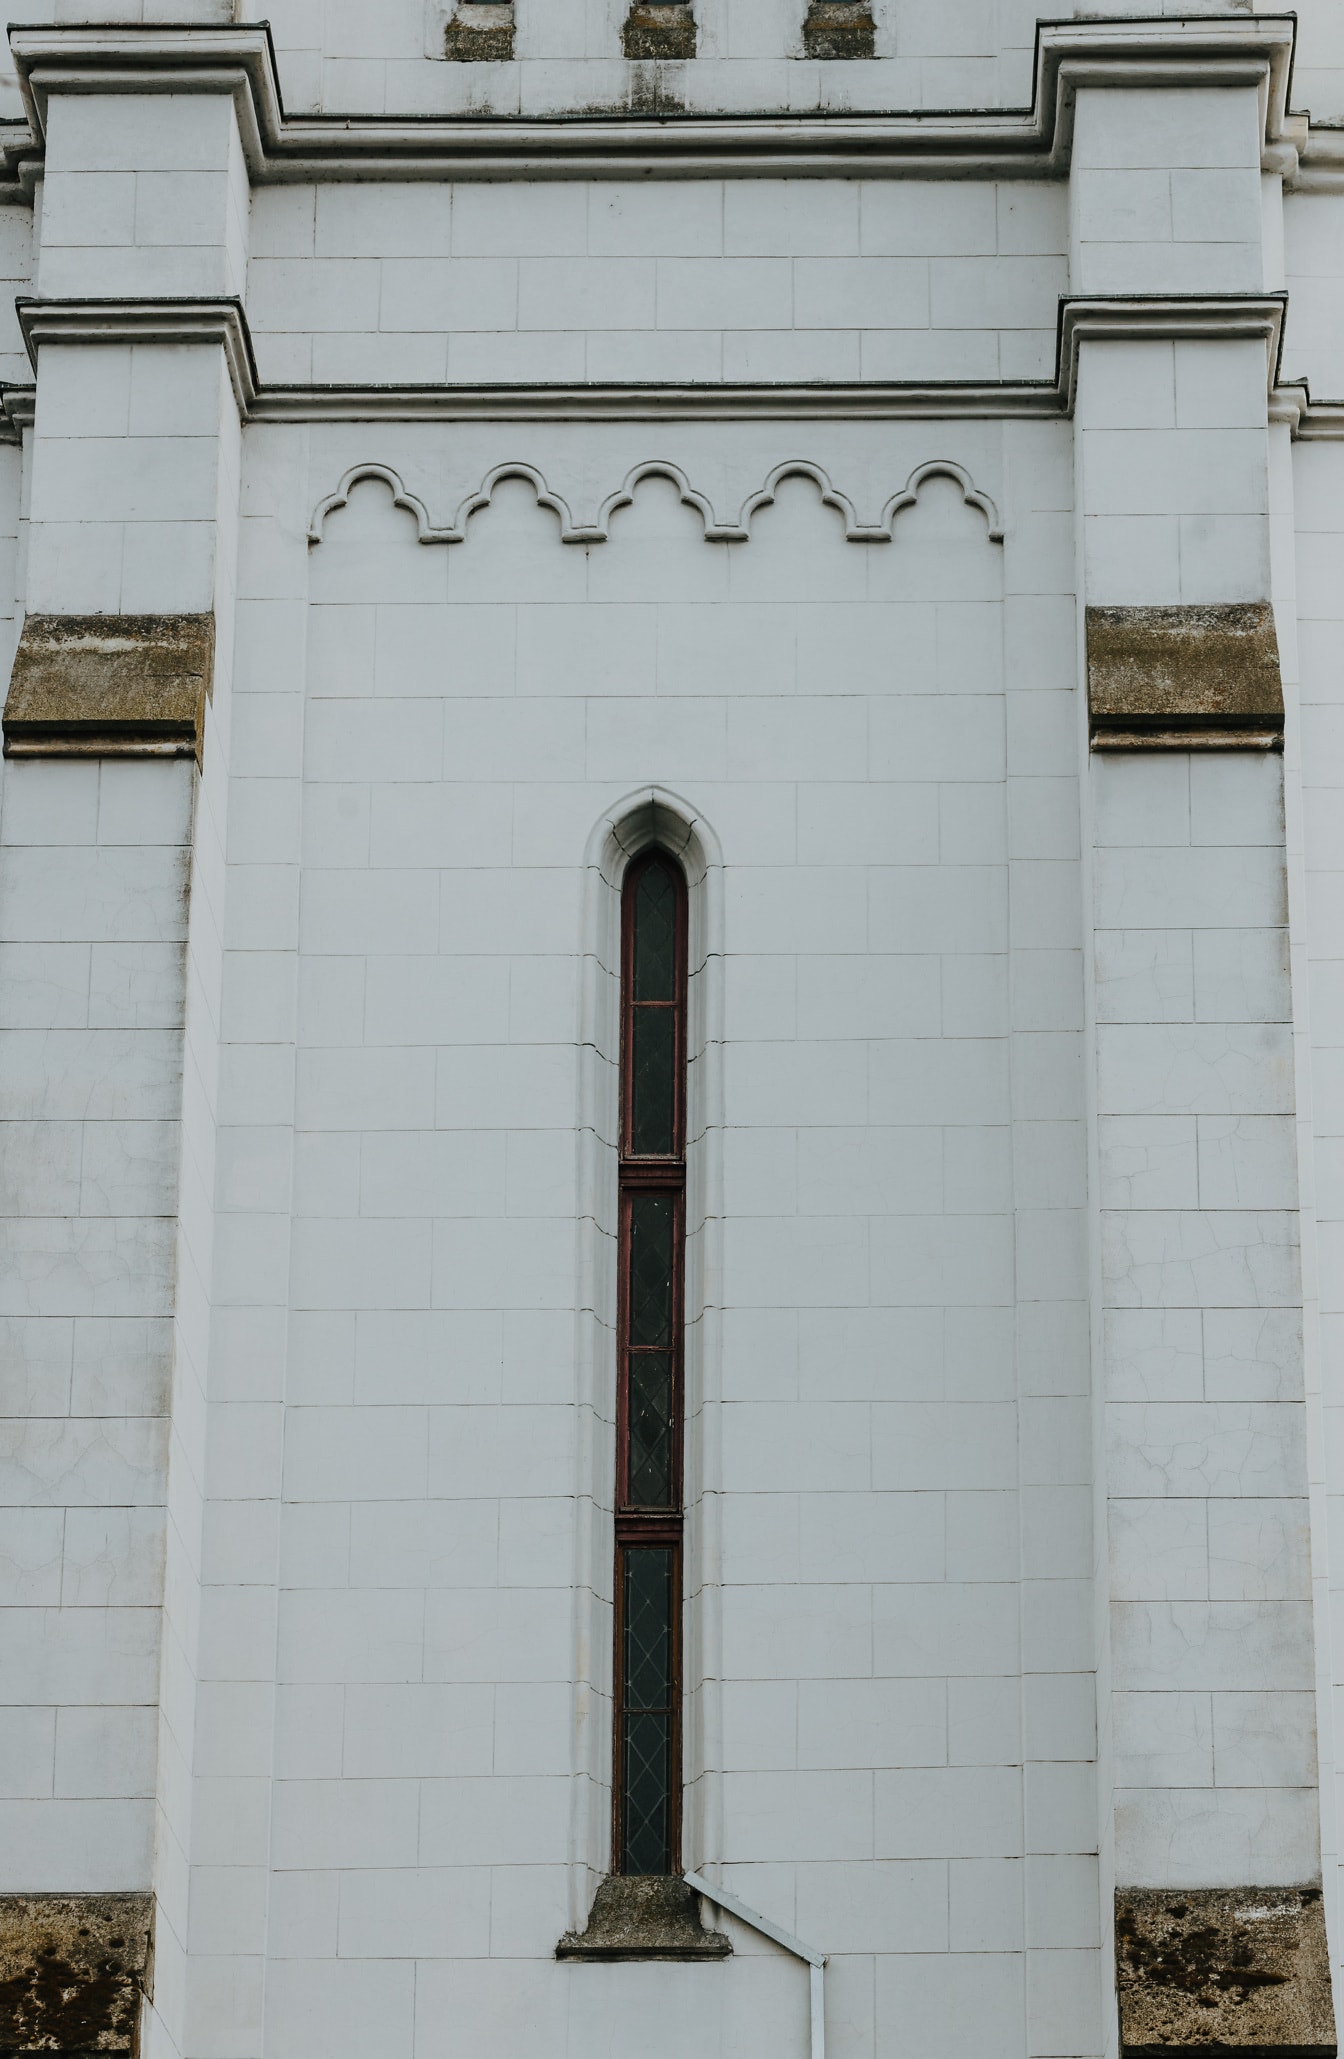 Jendela gothic sempit tinggi di dinding marmer putih